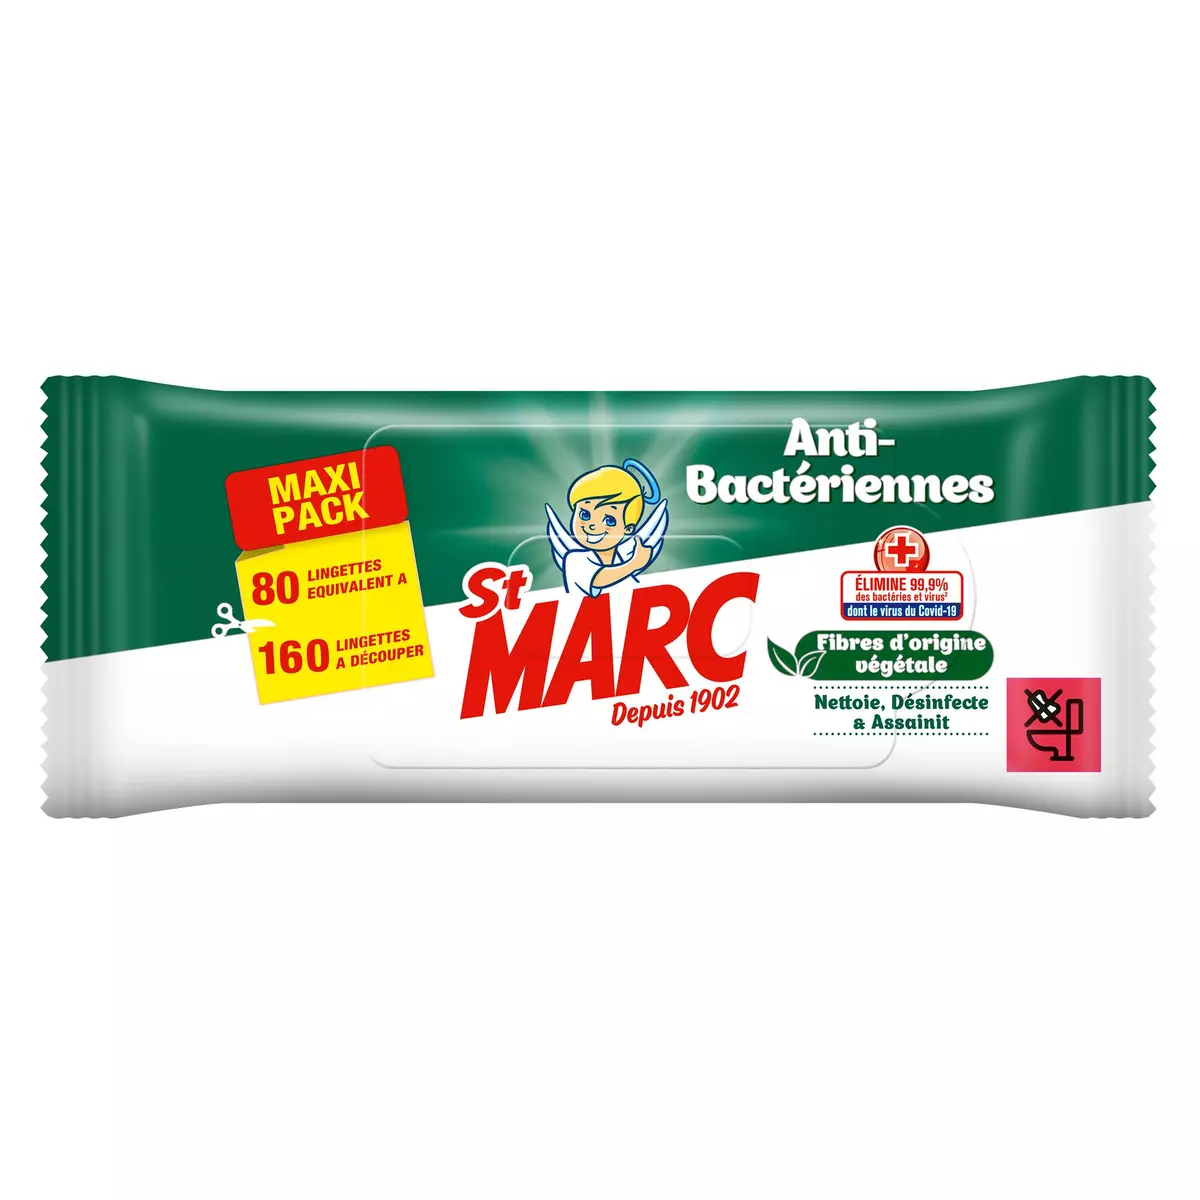 ST MARC Lingettes nettoyantes désinfectantes anti-bactériennes = 160 lingettes normales 80 lingettes